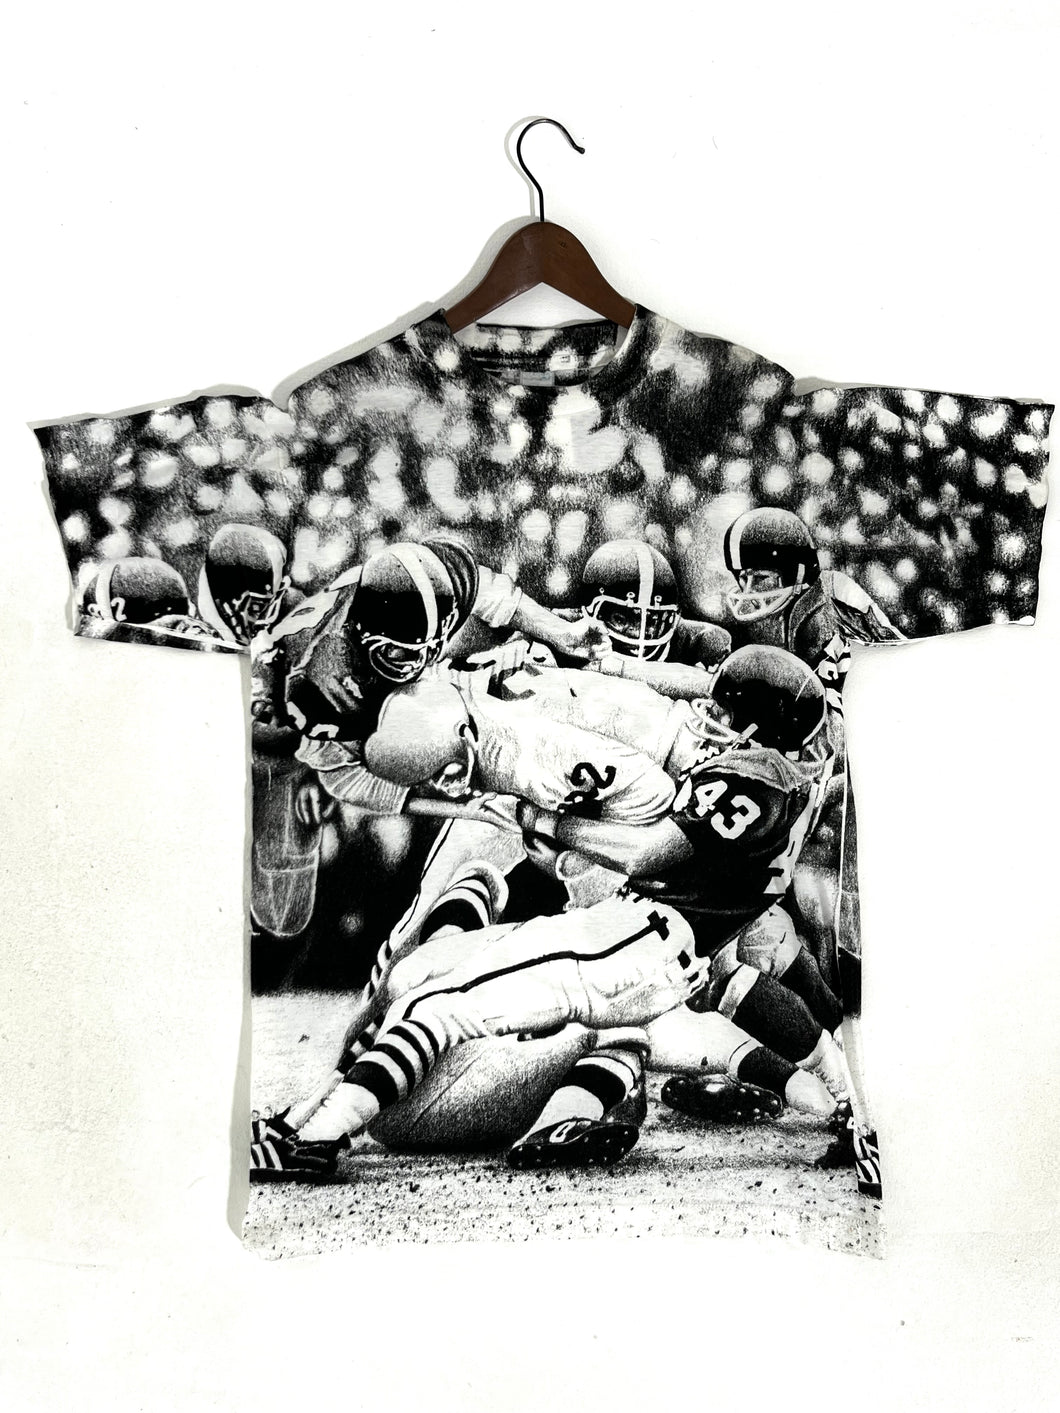 Vintage Football All Over Print T-Shirt Sz. XL